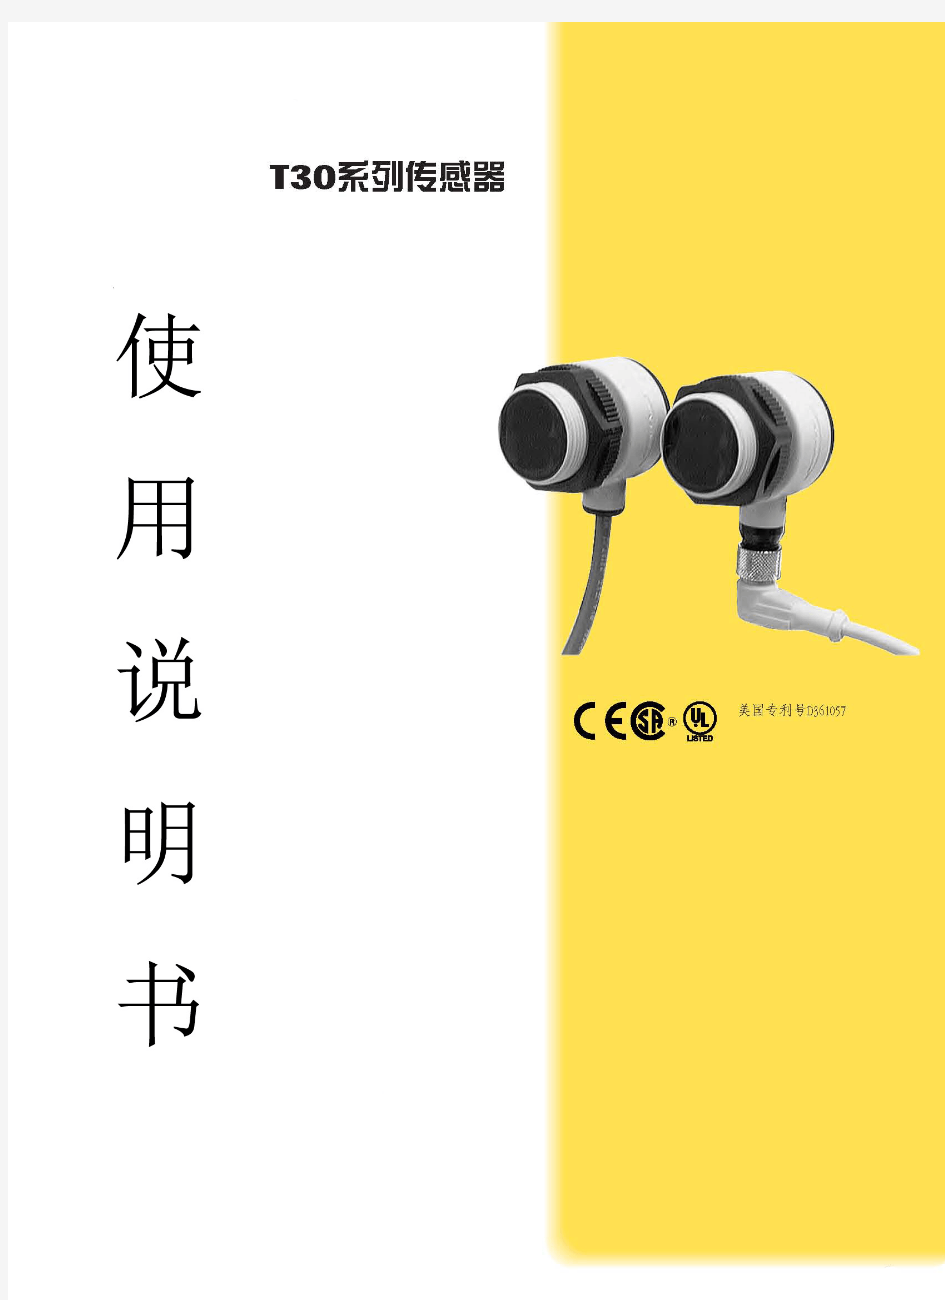 邦纳超声波传感器说明书(中文)